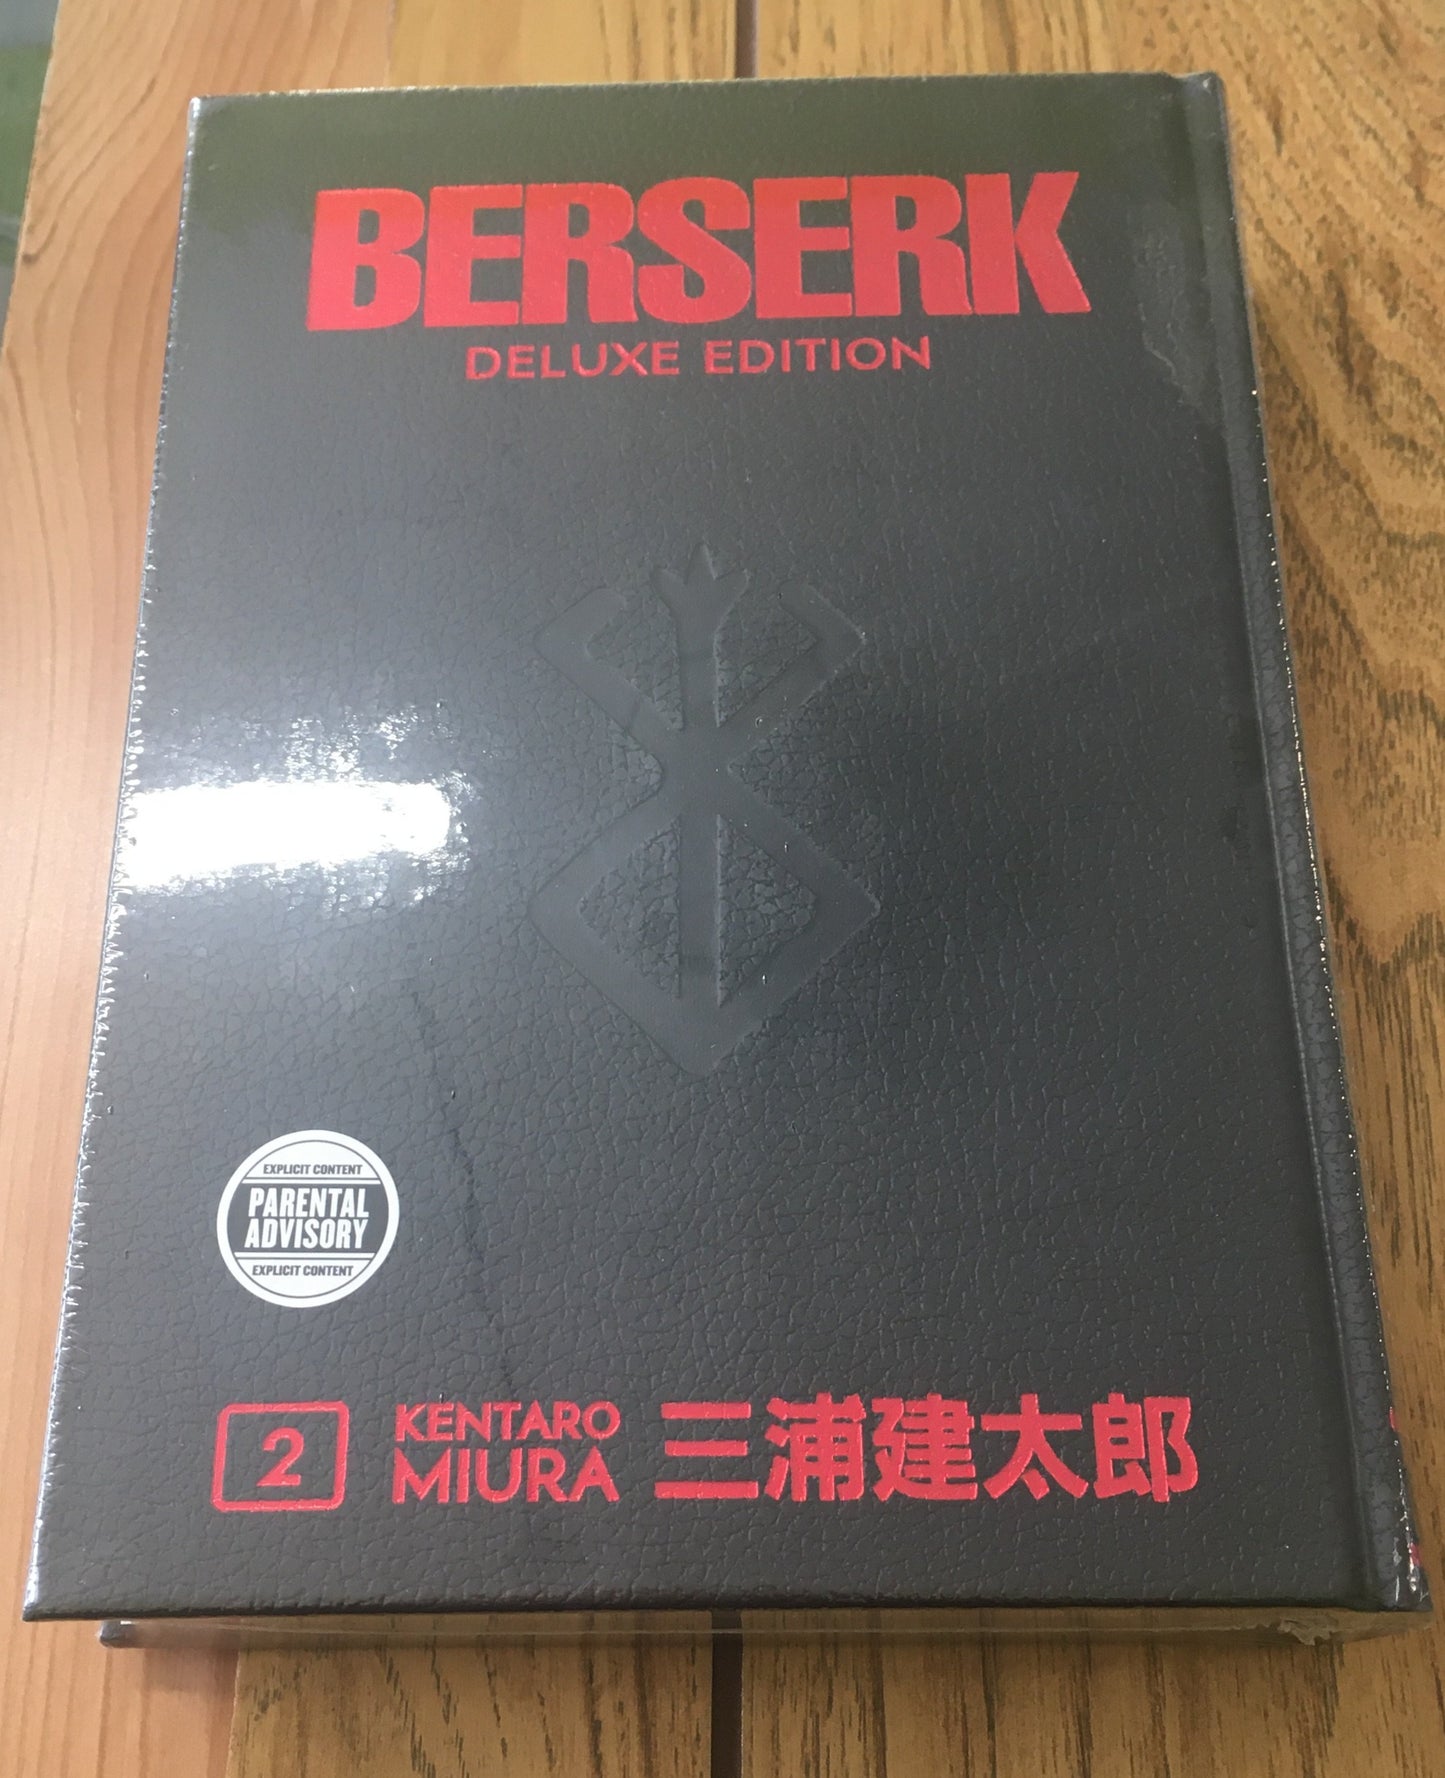 Berserk Deluxe Edition, Vol 2